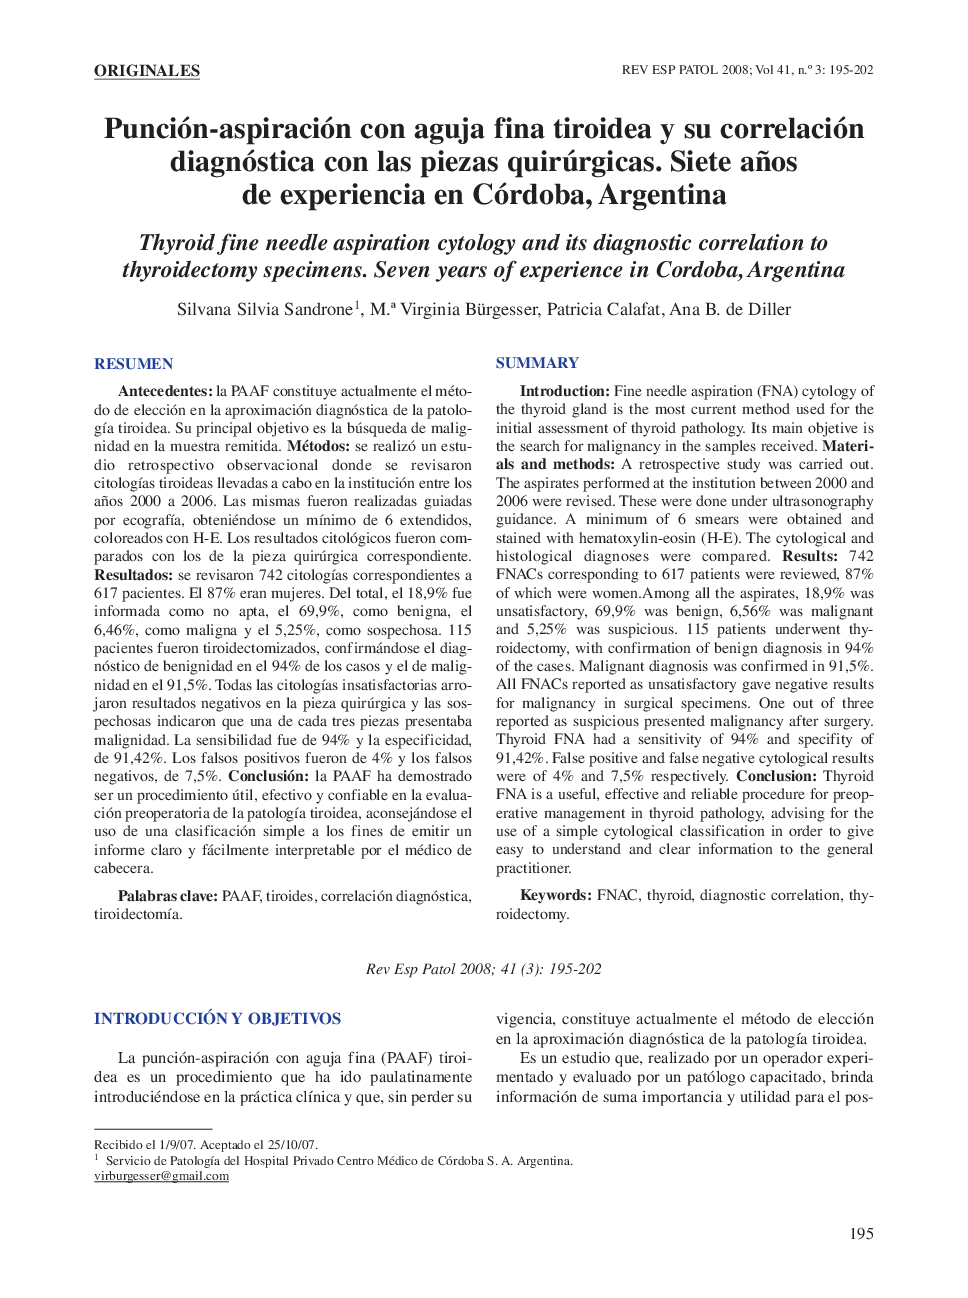 Punción-aspiración con aguja fina tiroidea y su correlación diagnóstica con las piezas quirúrgicas. Siete años de experiencia en Córdoba, Argentina